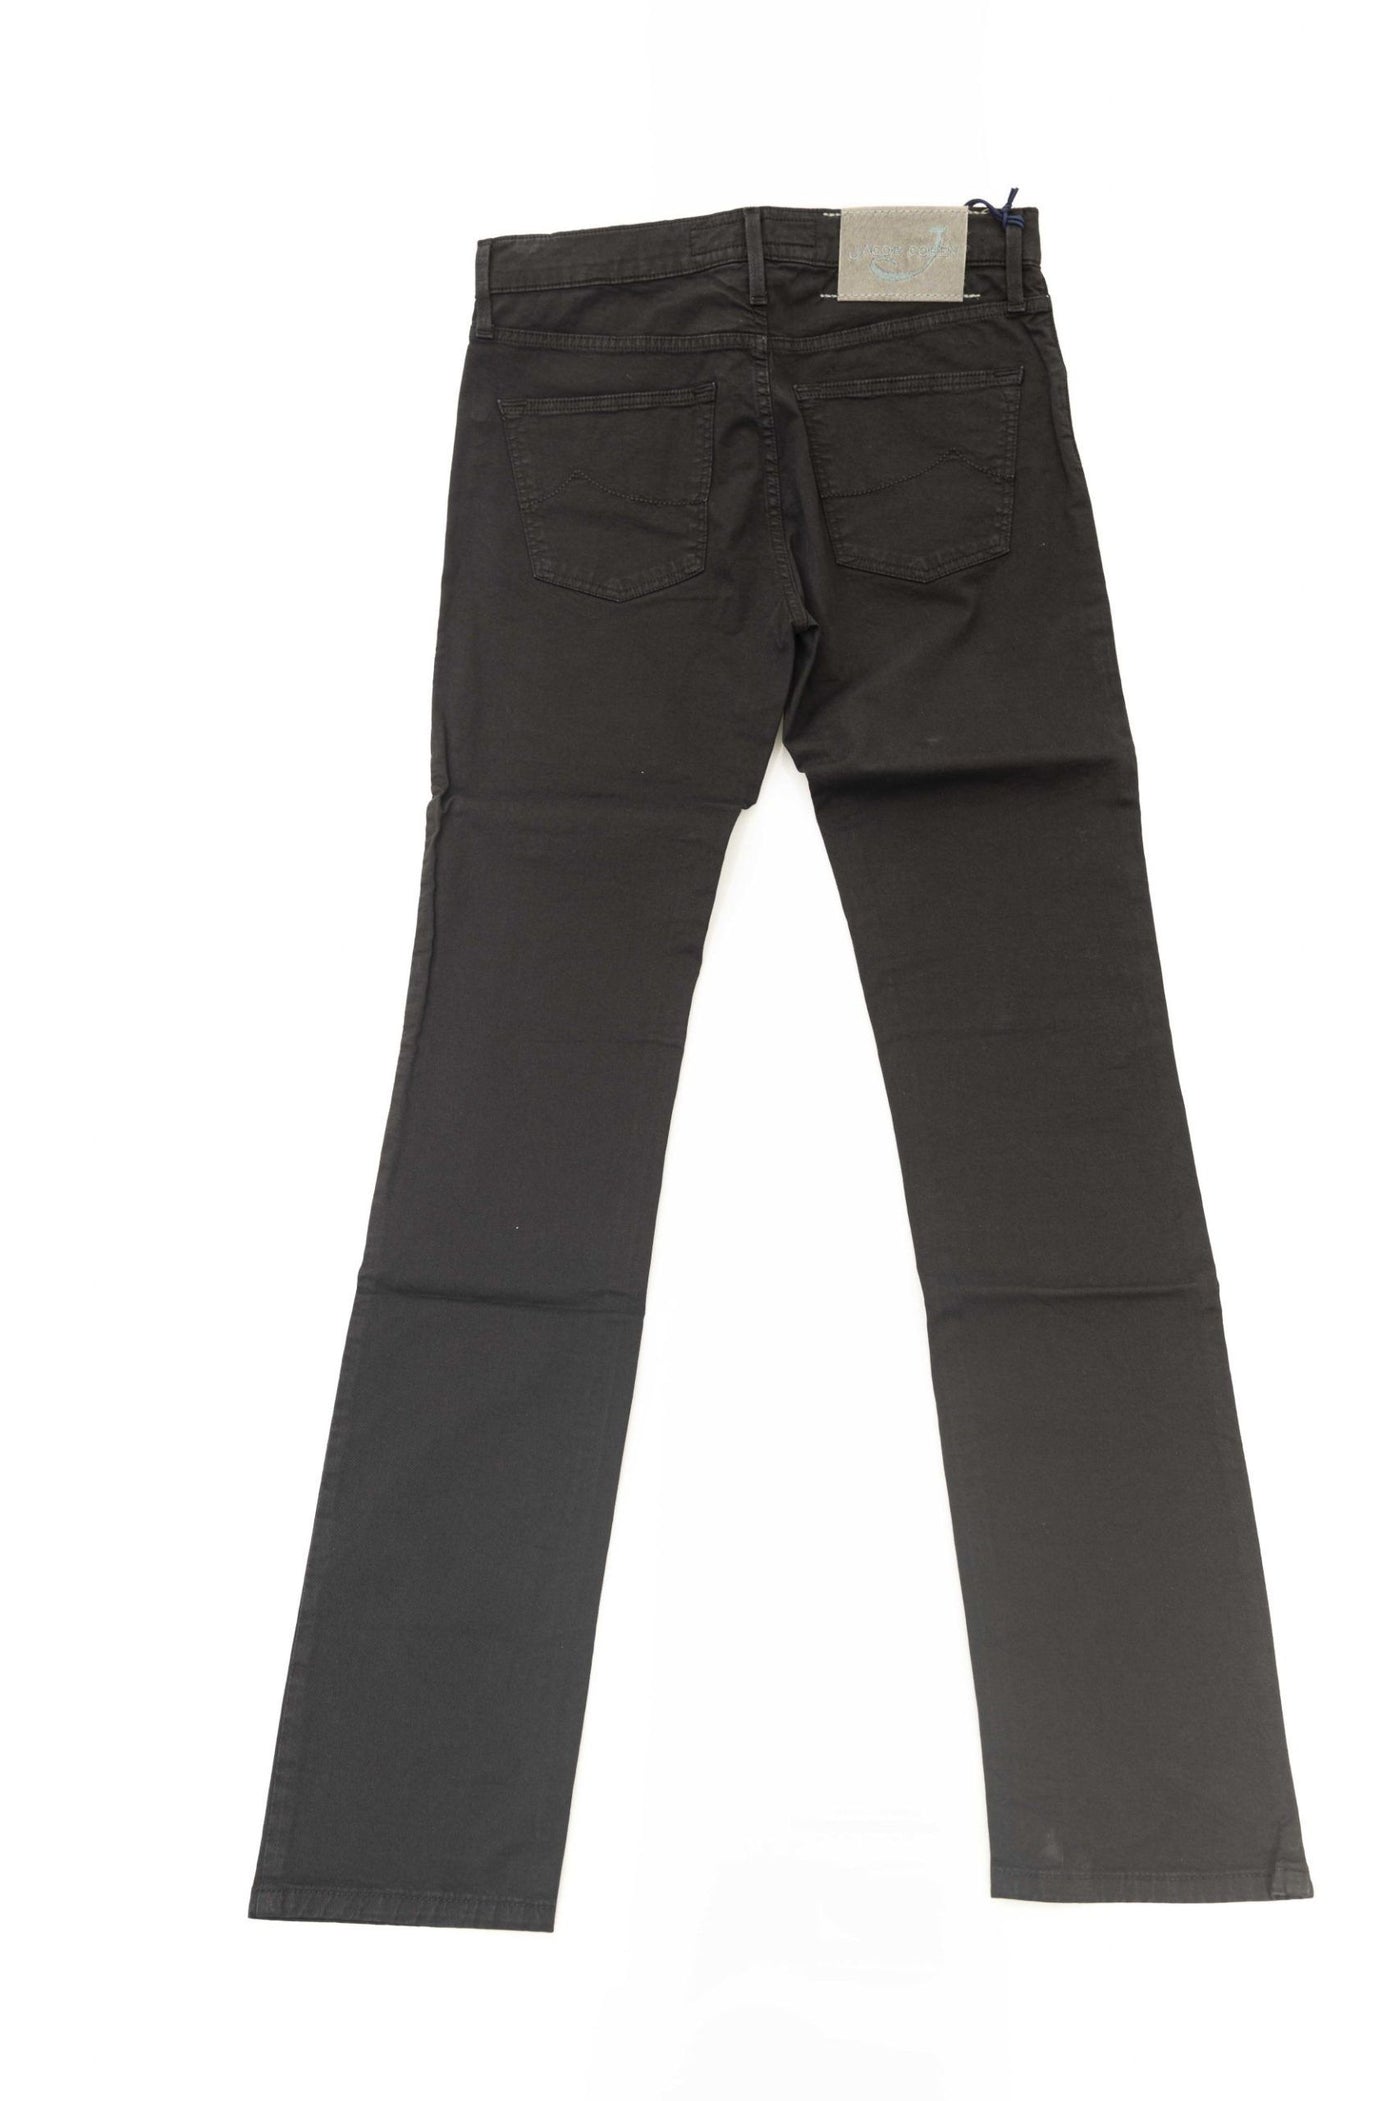 Jacob Cohen Black Cotton Jeans & Pant